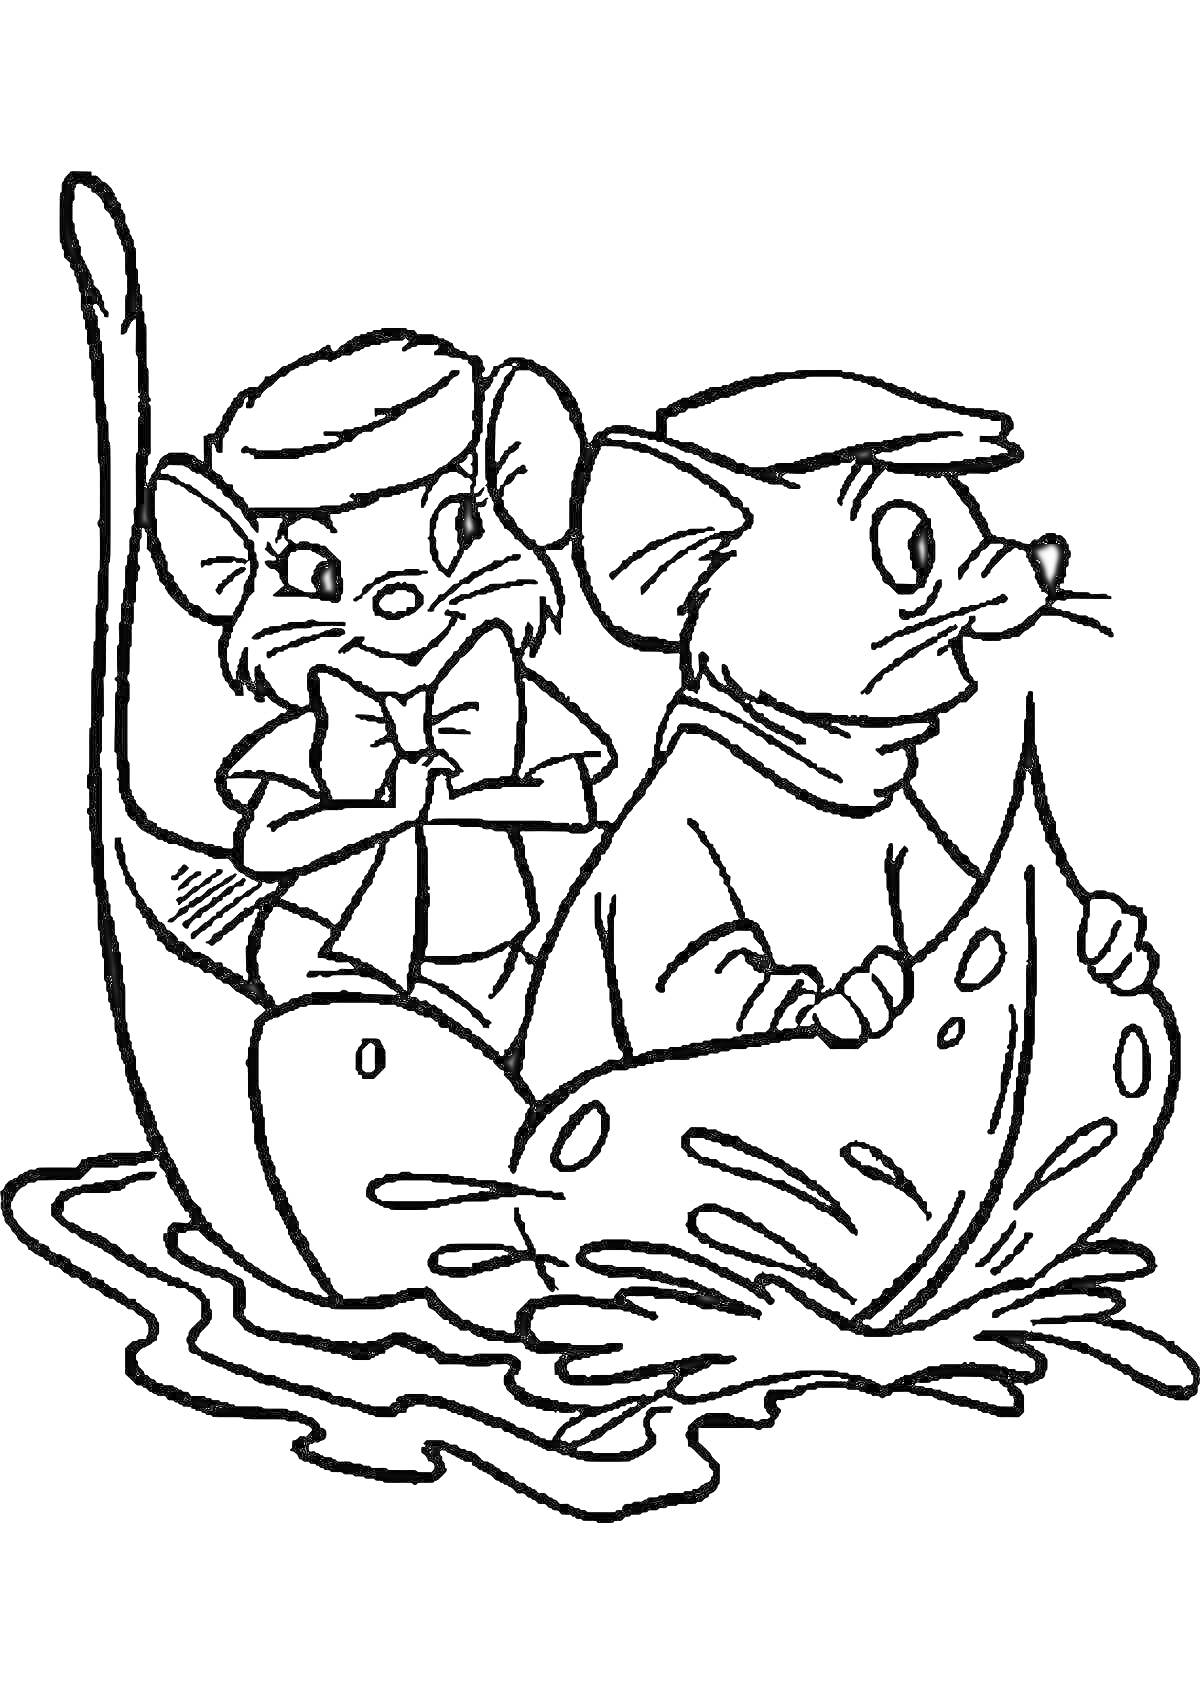 Раскраска Две мыши в шляпах плывут на листе по воде